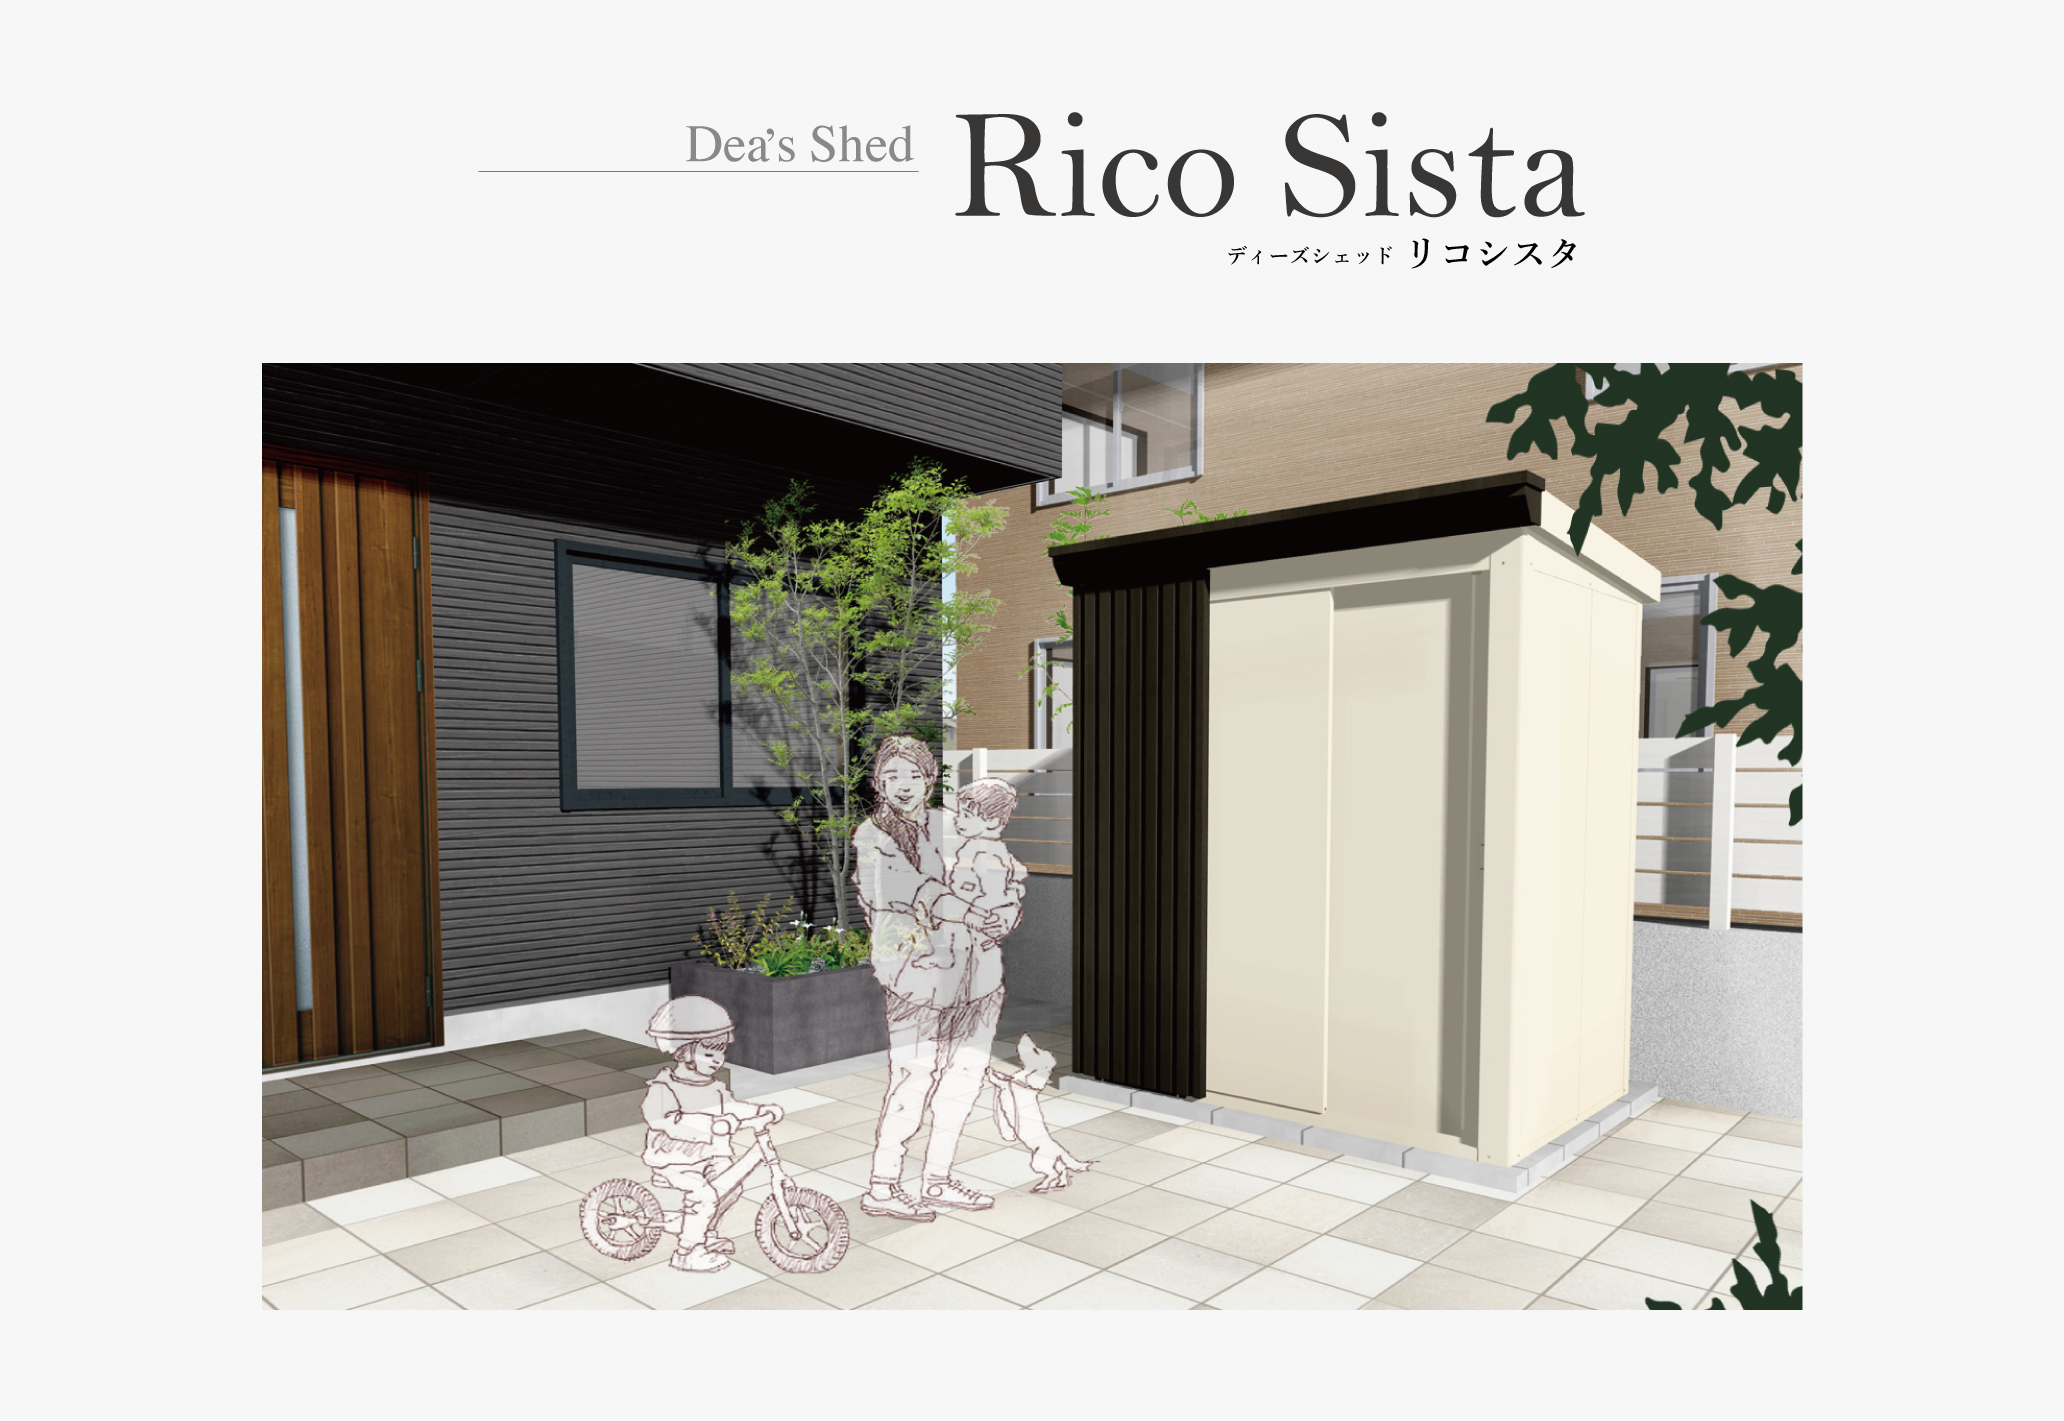 販売 東京ガーデニングスタイルおしゃれ収納物置 ディーズシェッドリコD125 Dea's shed Rico D125